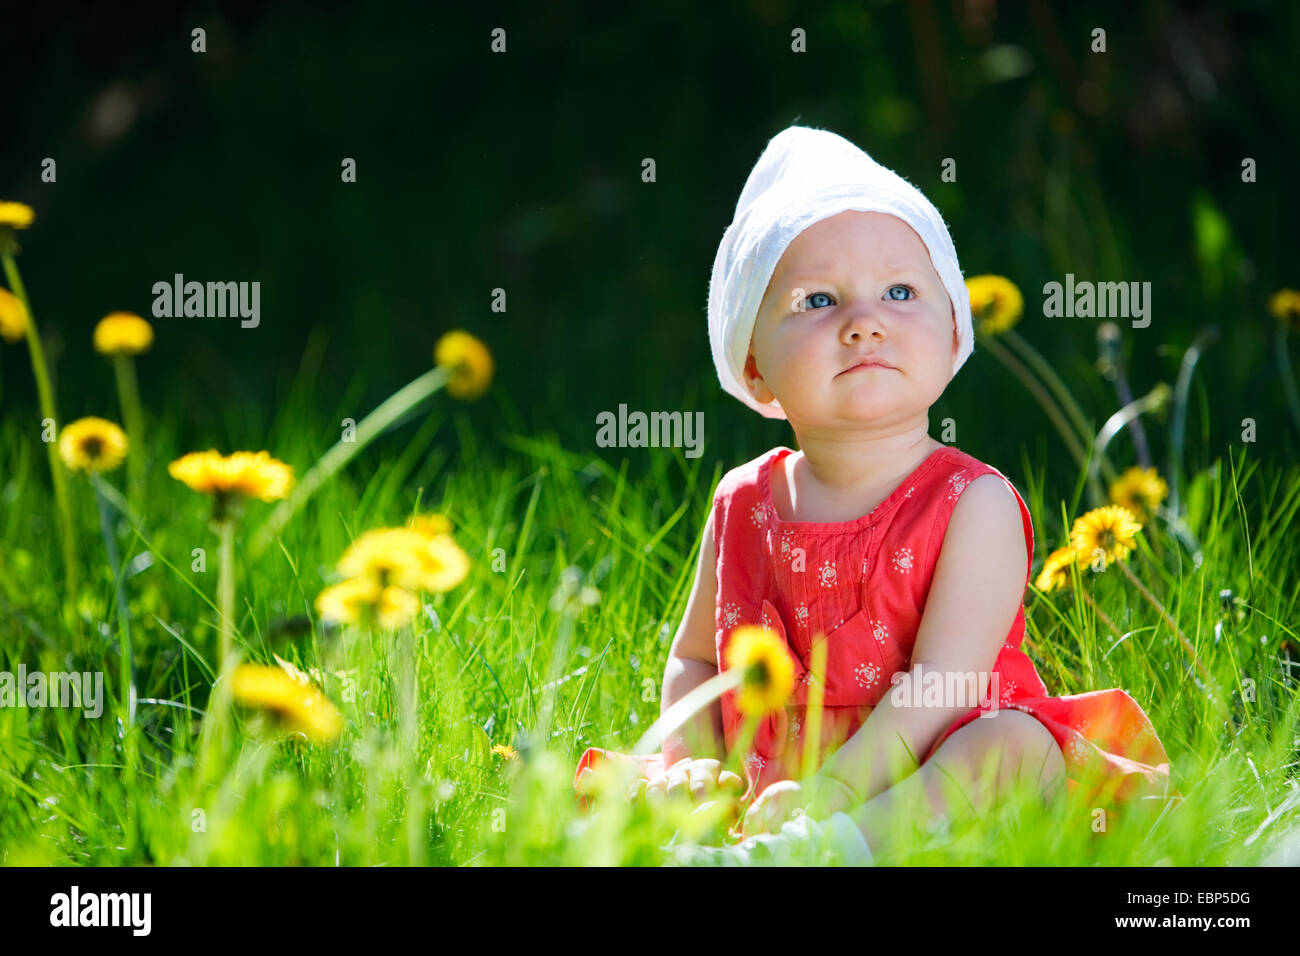 Baby girl in esterni al giorno d'estate e di sole Foto Stock